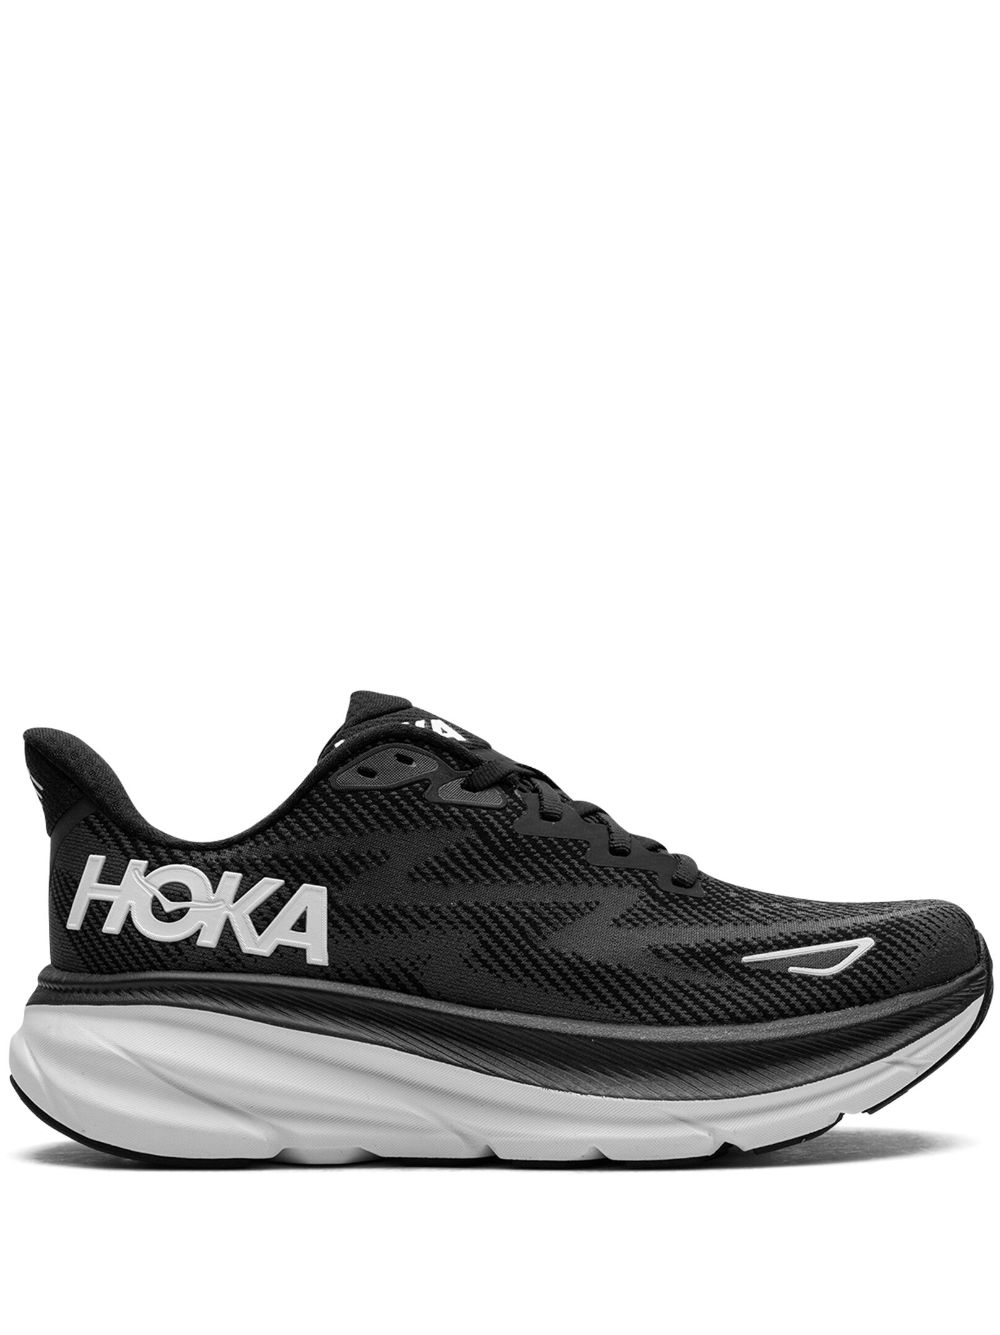 HOKA Clifton 9 "Black/White" sneakers von HOKA